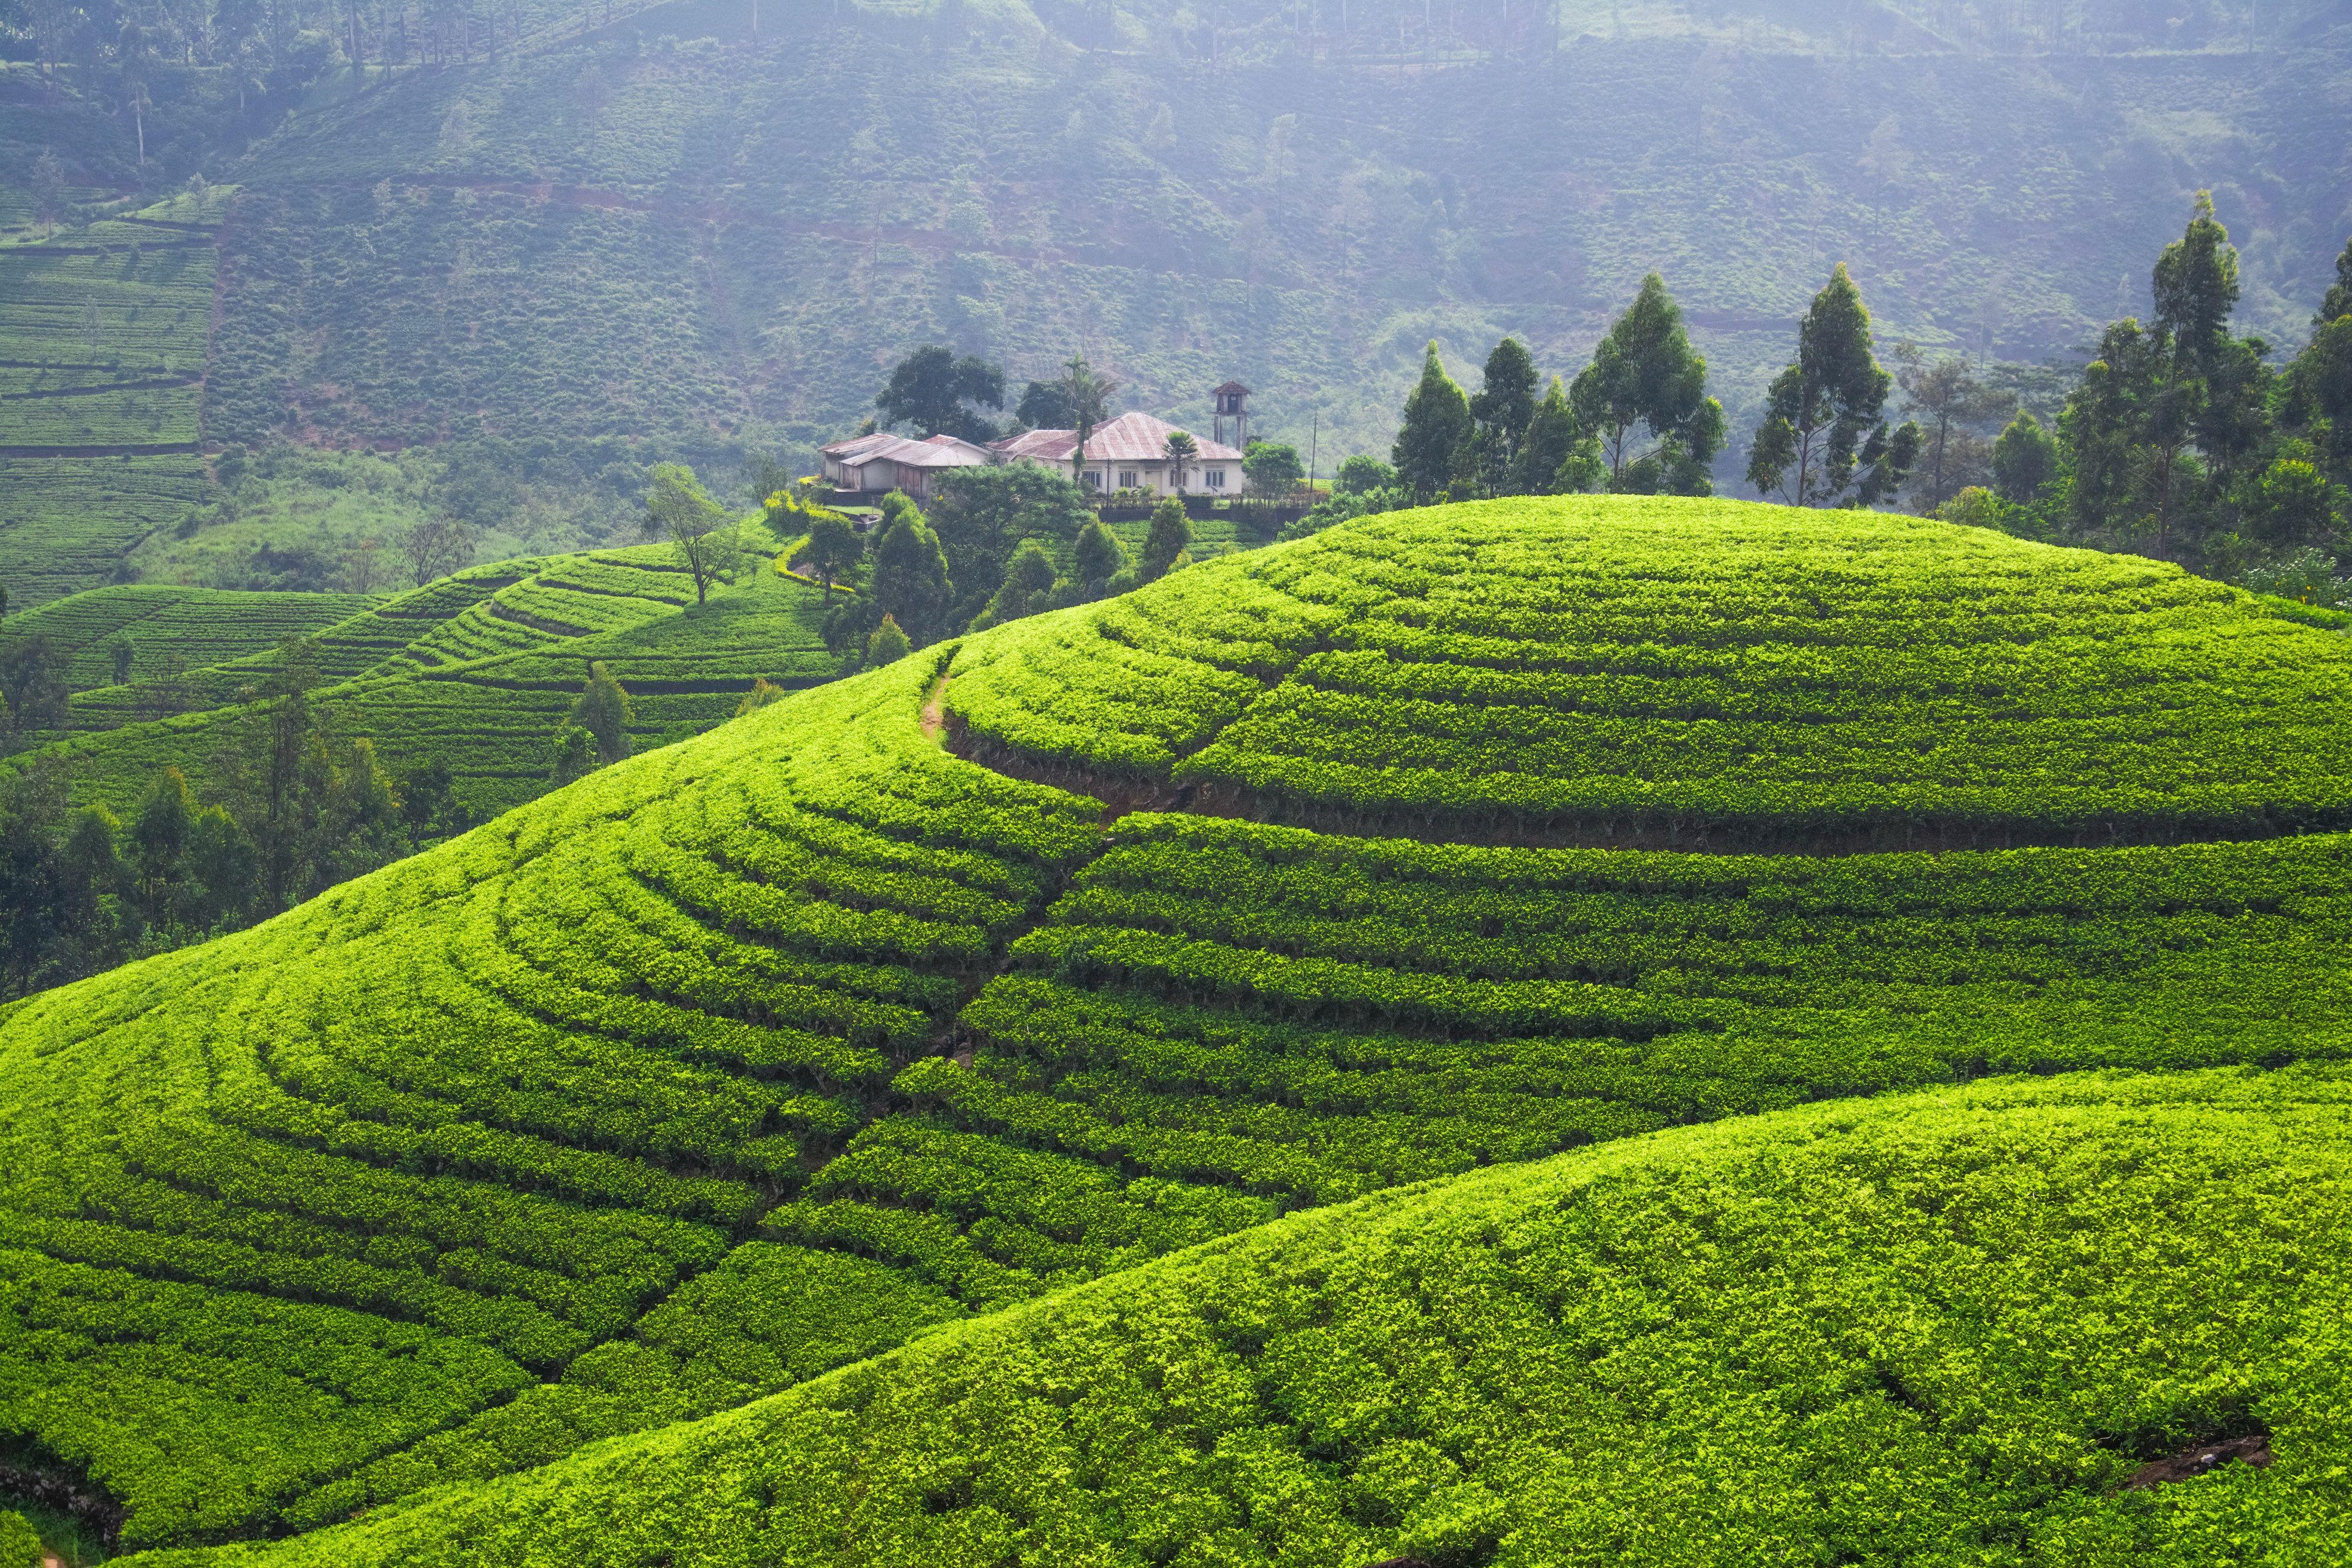 Image tea plantation Nature Fields Landscape photography 4000x2667